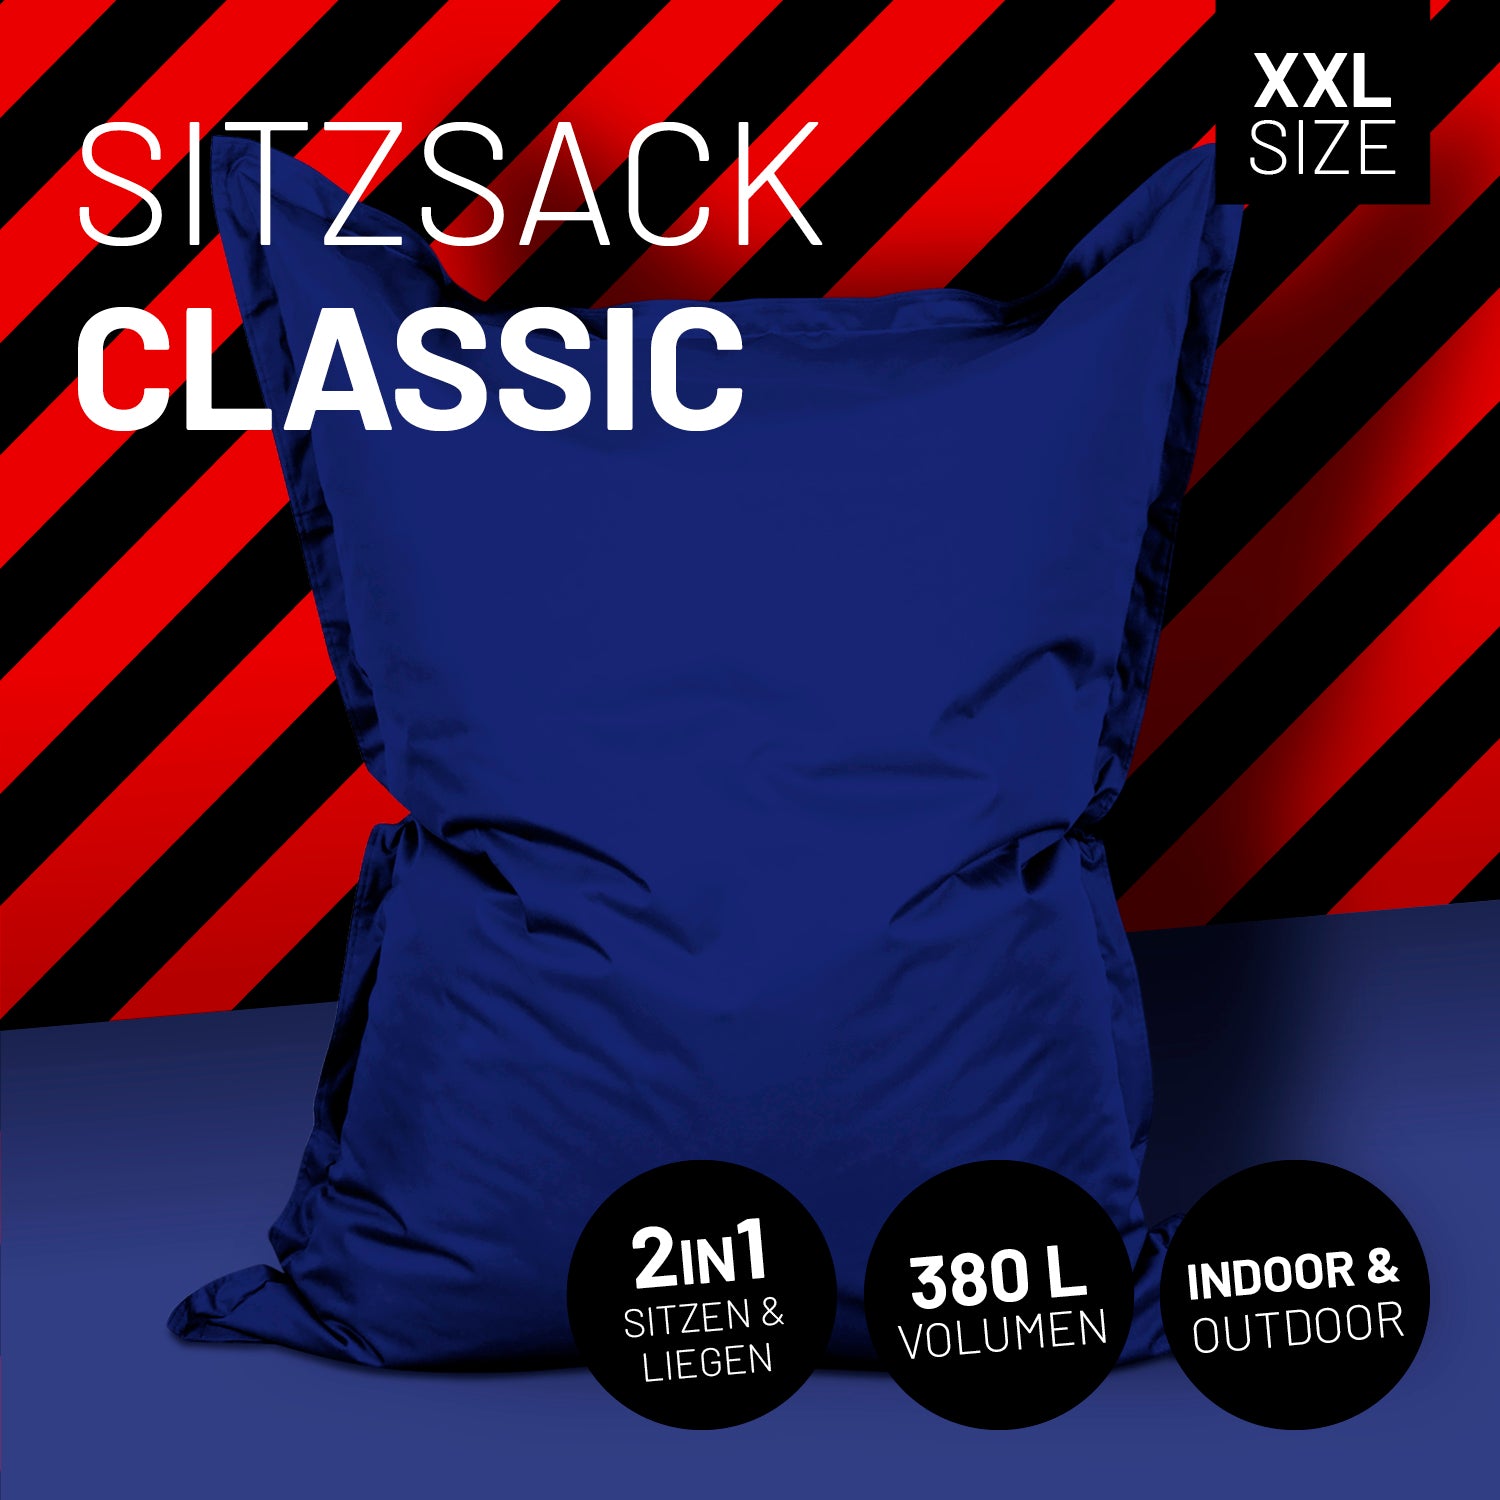 Sitzsack Classic XXL (380 L) - In- & outdoor - Dunkelblau